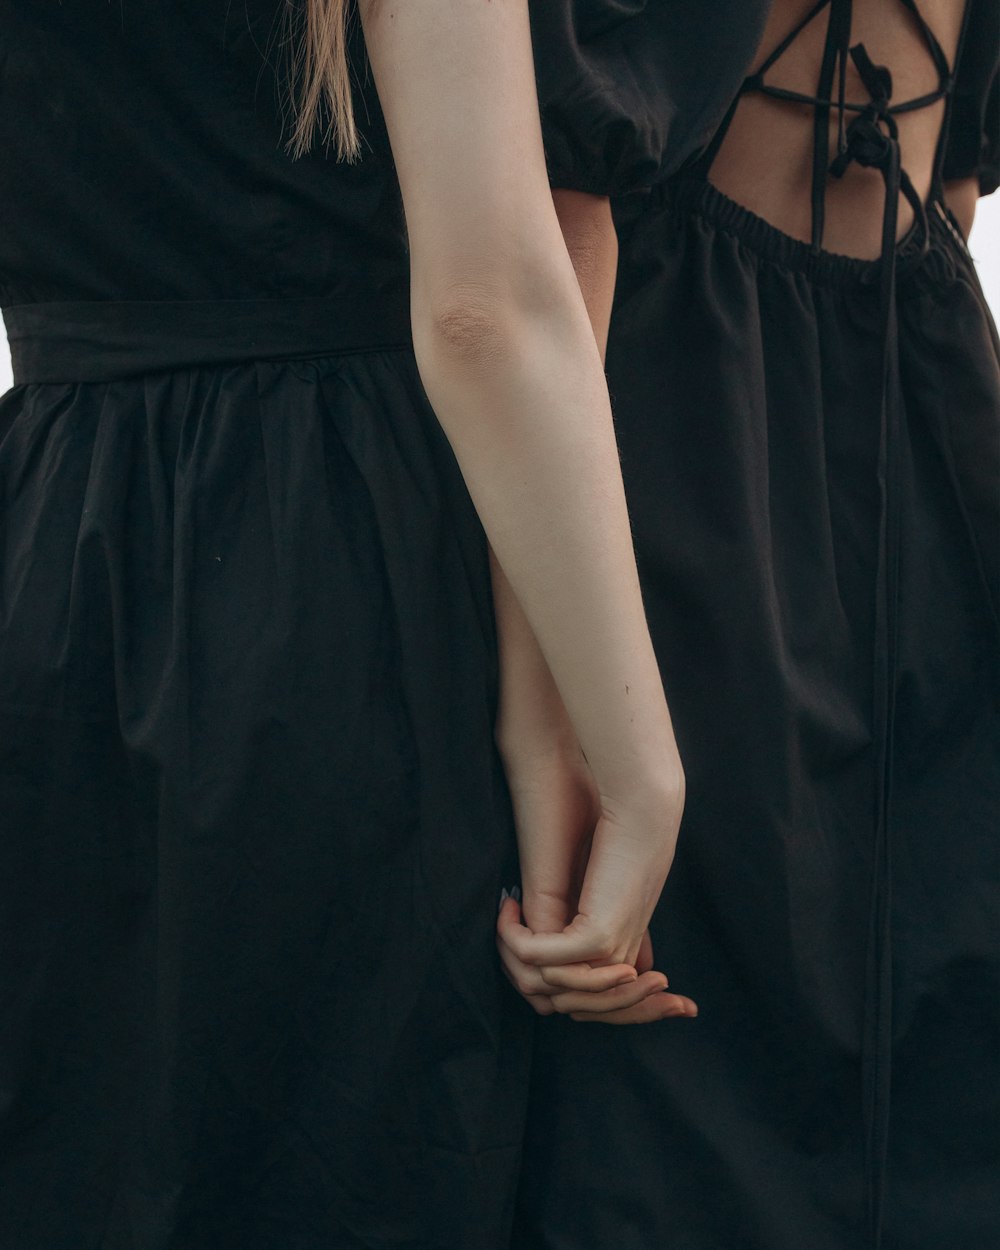 Dos mujeres de pie una al lado de la otra tomadas de la mano